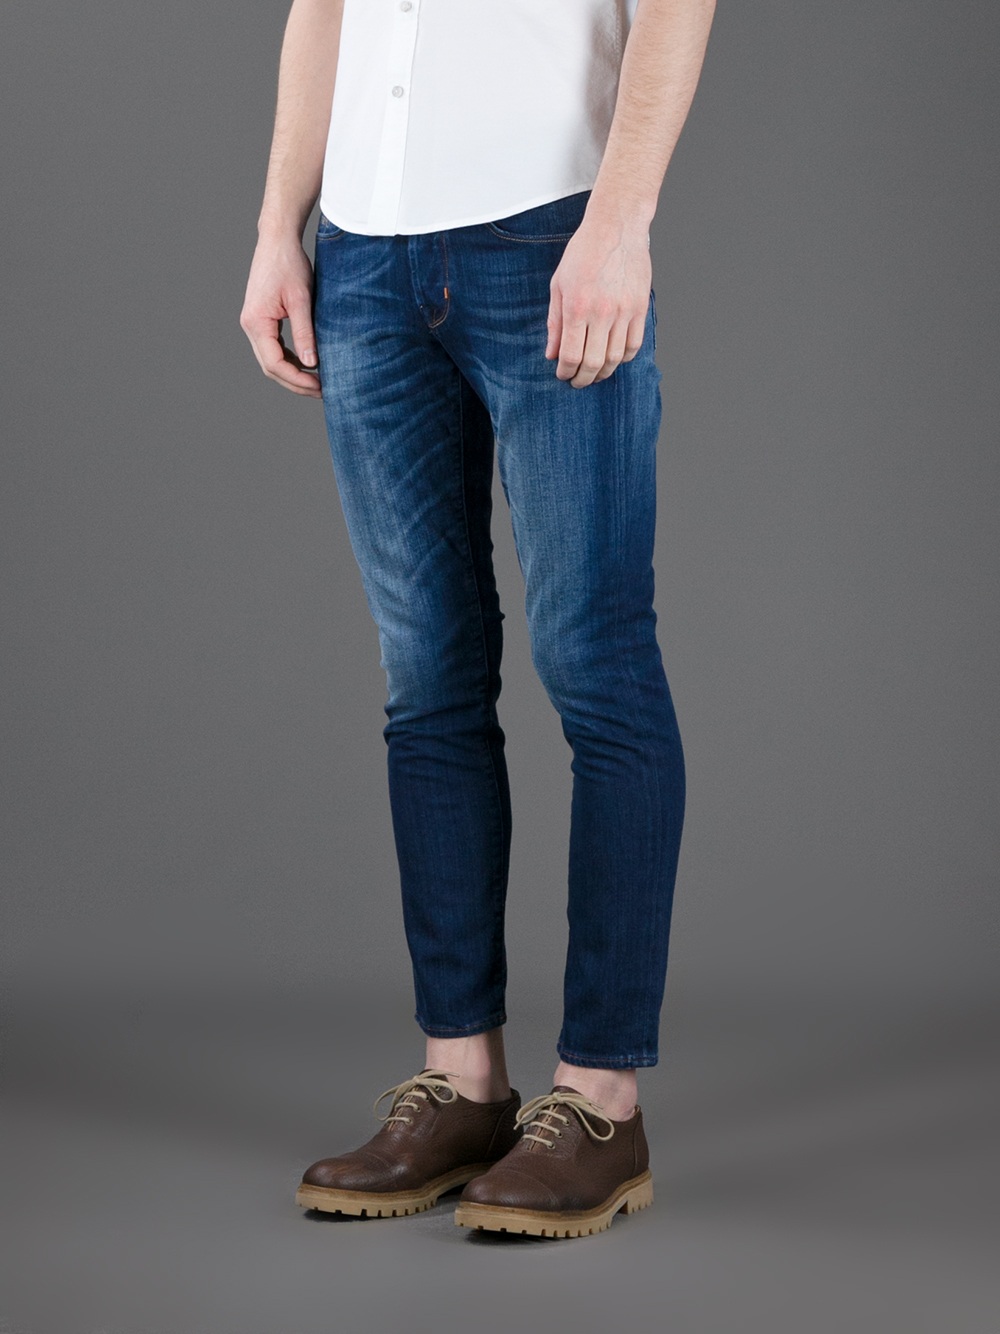 Jacob Cohen Jeans Slim Fit Flash Sales, SAVE 42% - online-pmo.com